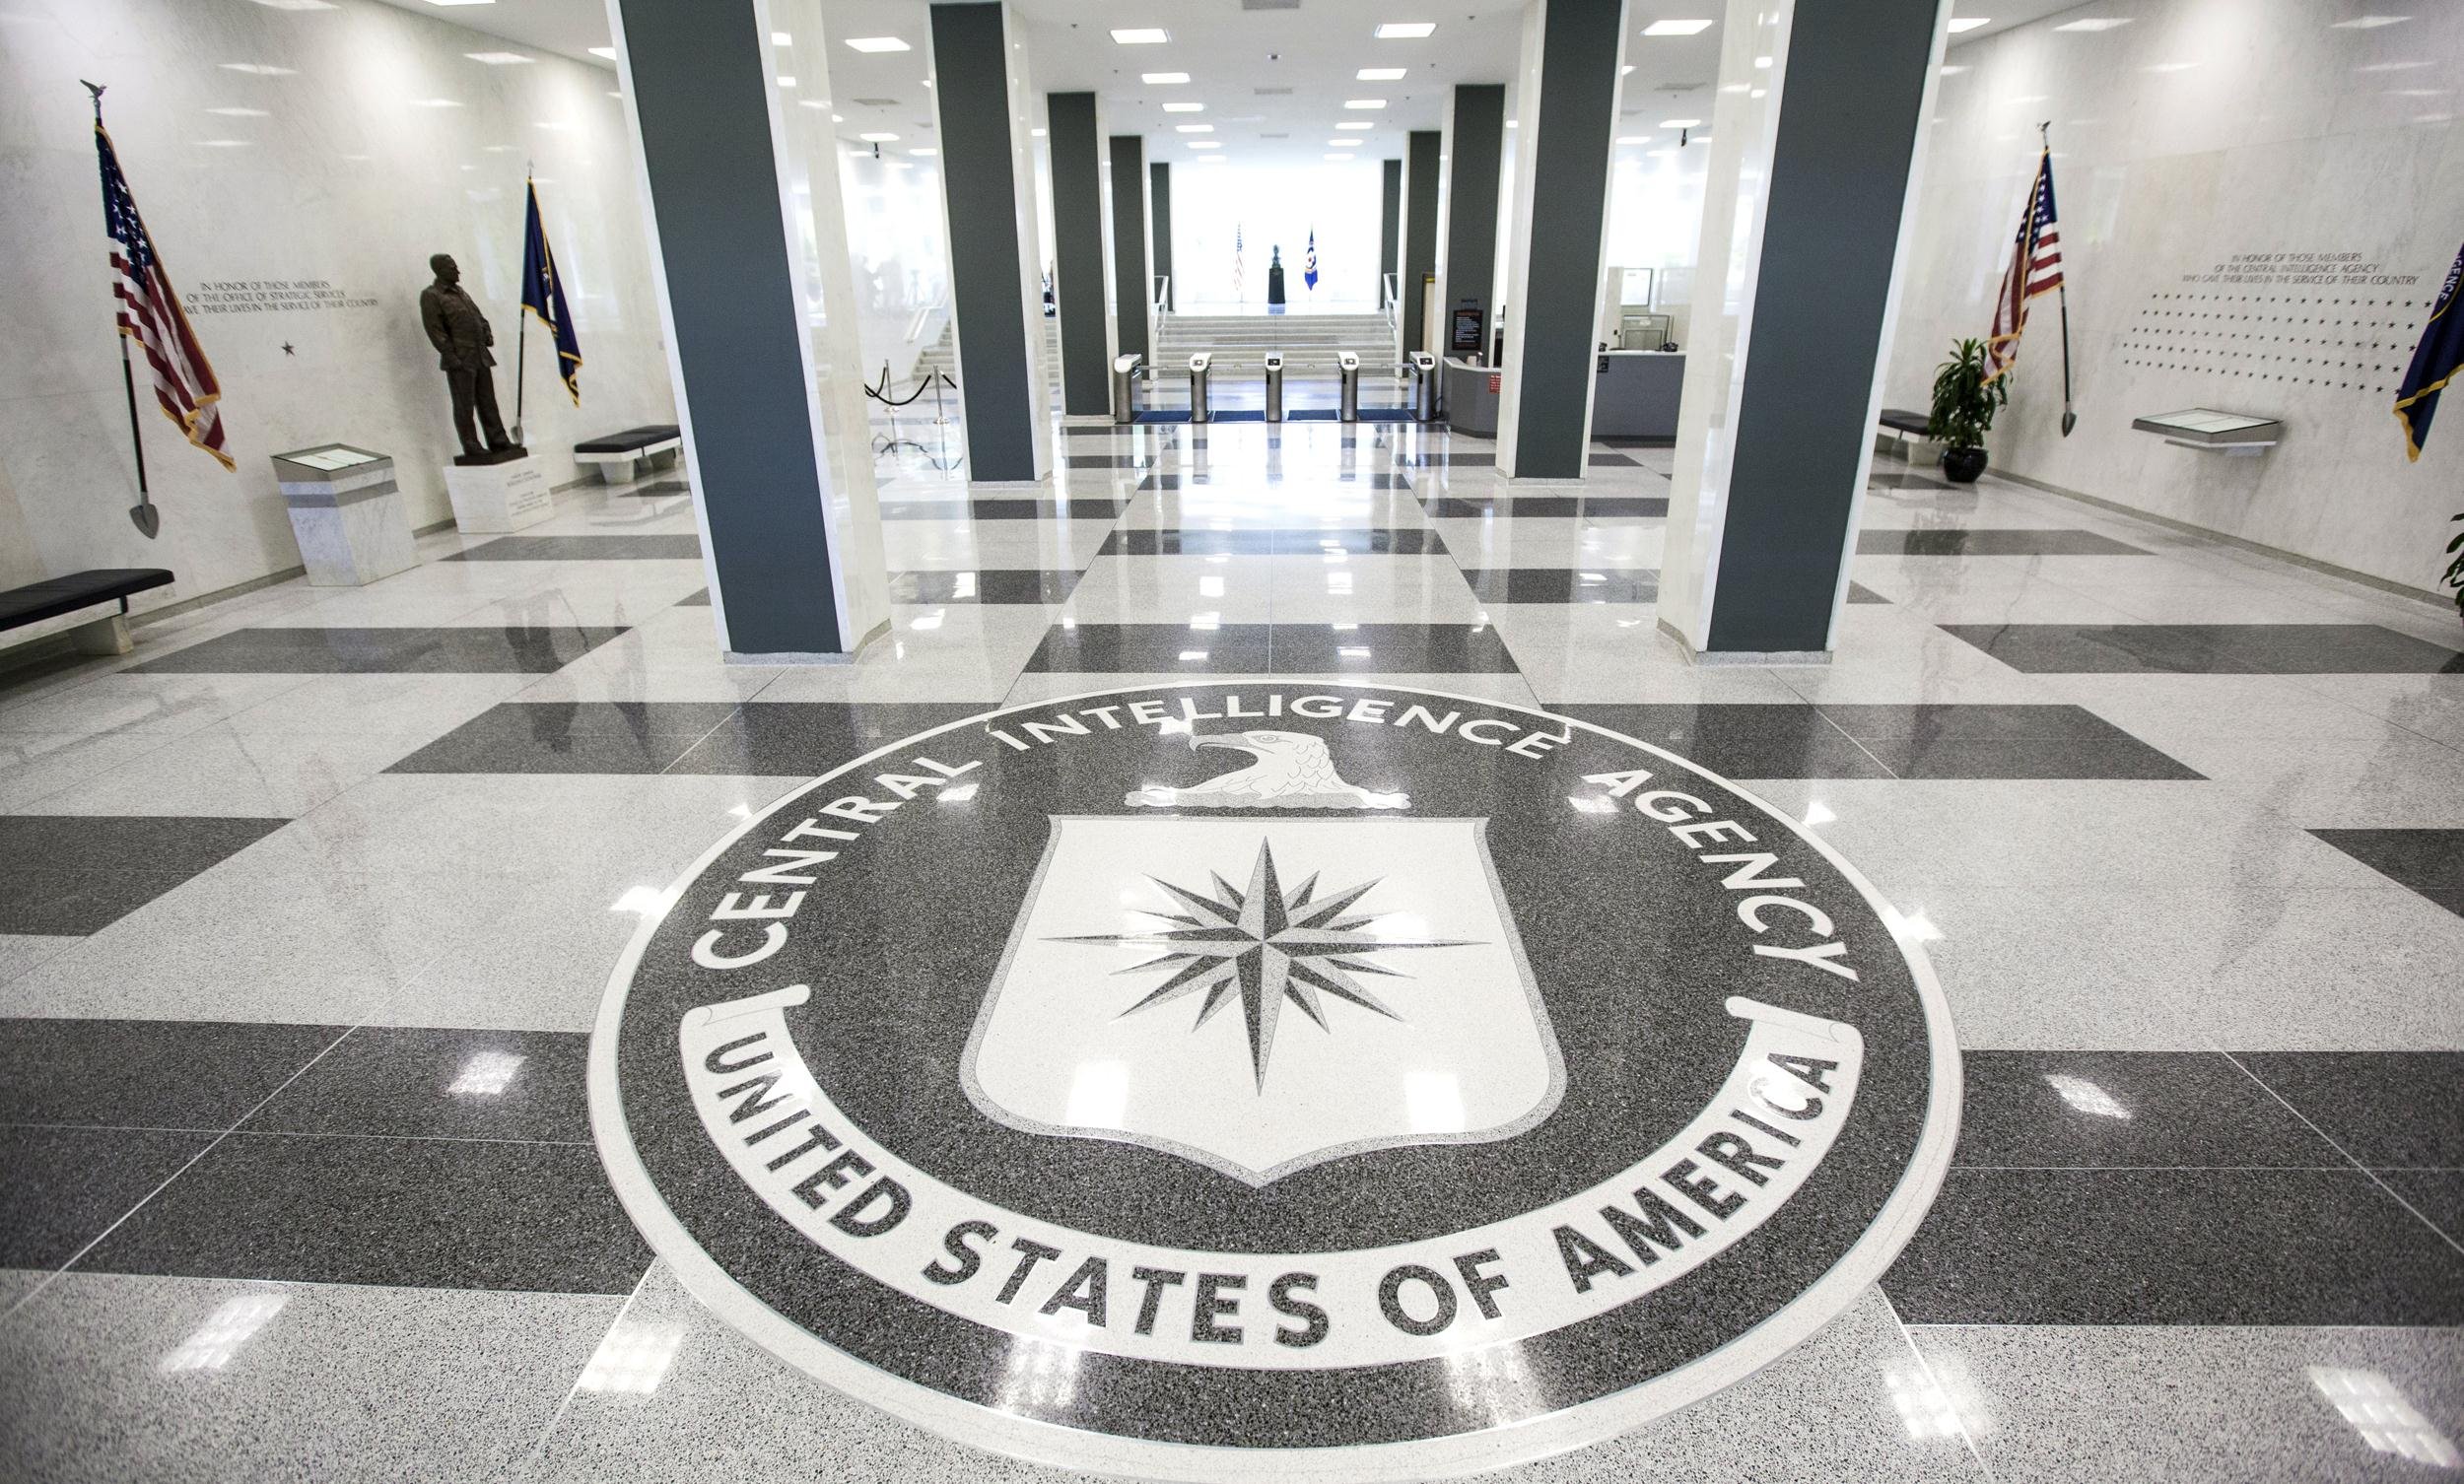 cia-central-intelligence-agency-crime-usa-america-spy-logo